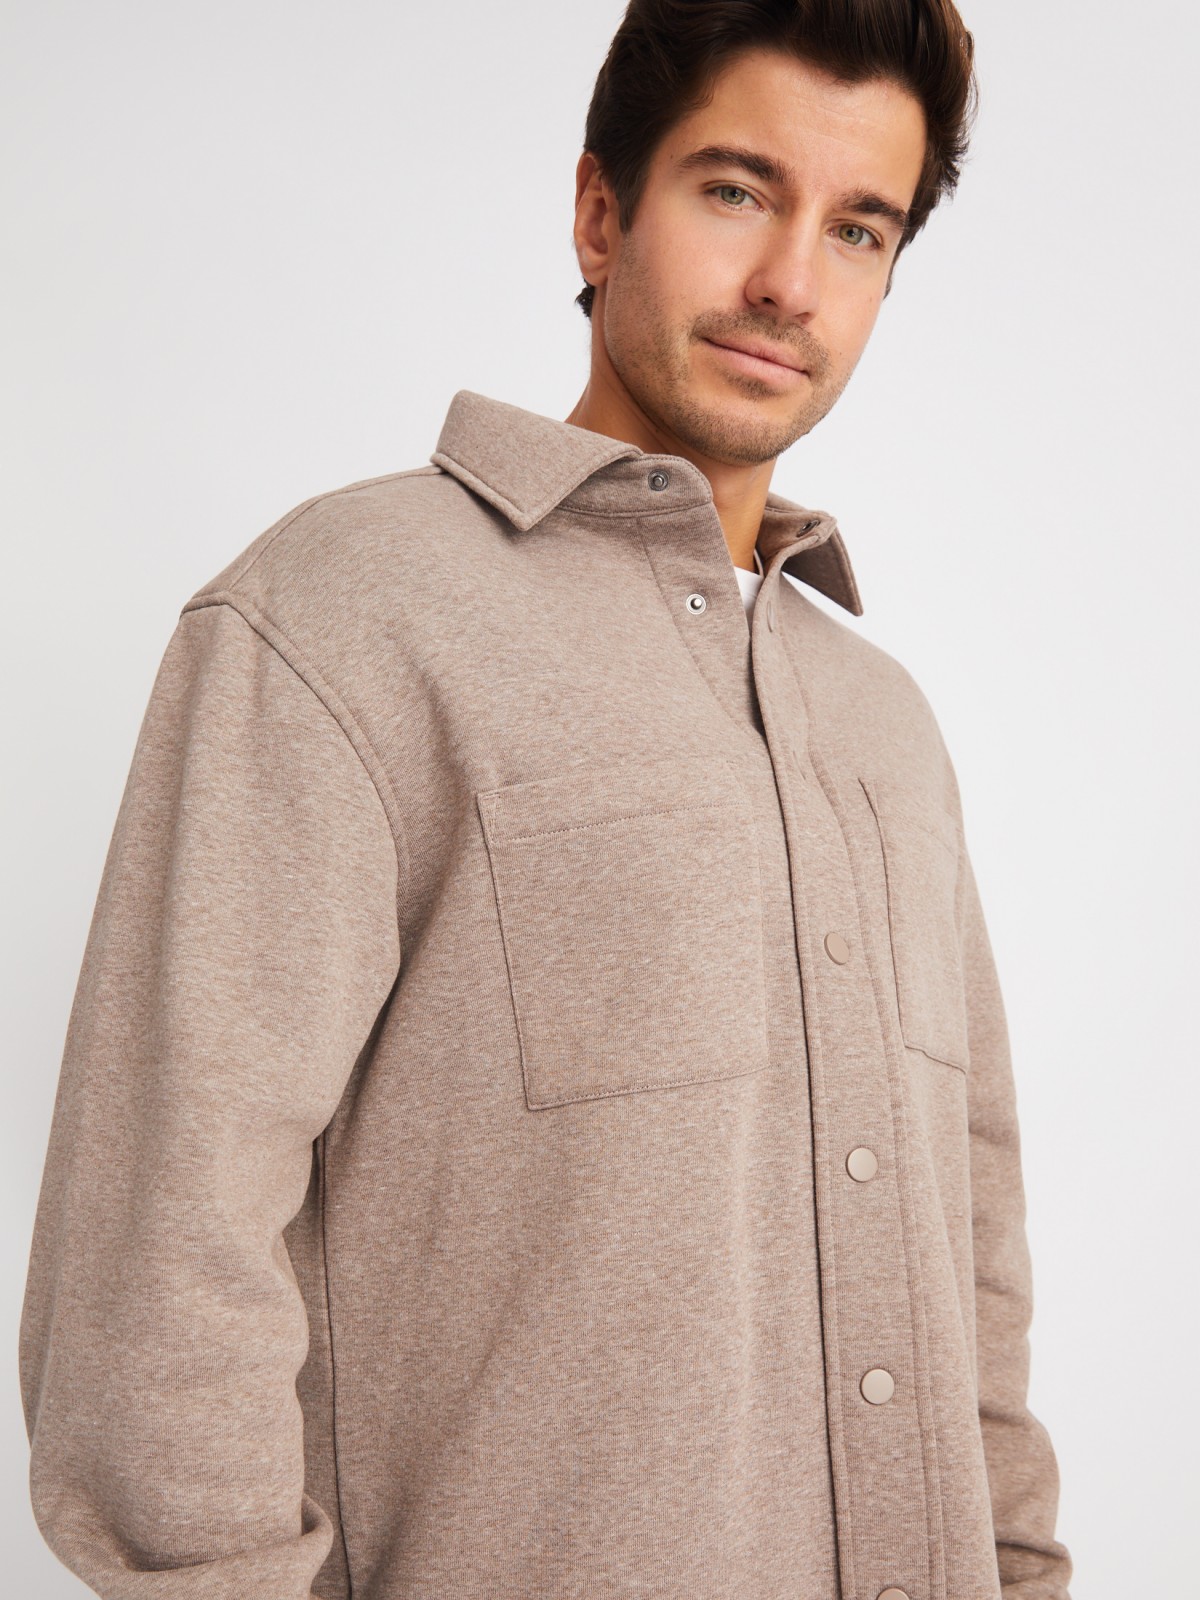 Утеплённая трикотажная куртка-рубашка с начёсом zolla 01411432F023, цвет коричневый, размер S - фото 4